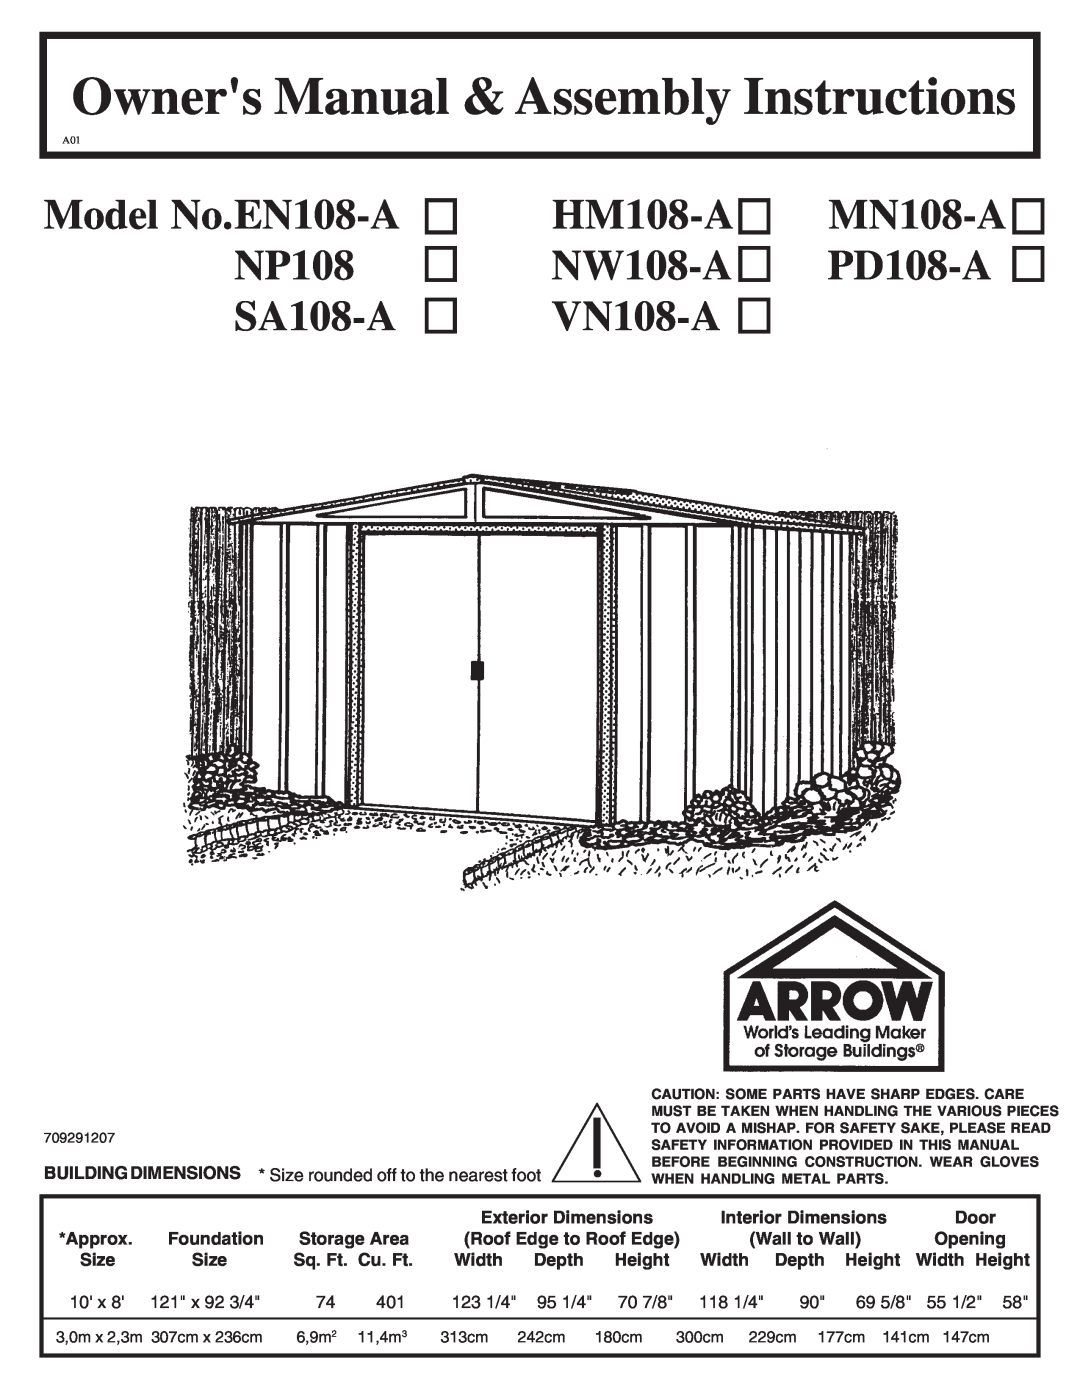 Arrow Plastic owner manual Model No.EN108-A NP108 SA108-A, HM108-A NW108-A VN108-A, MN108-A PD108-A 